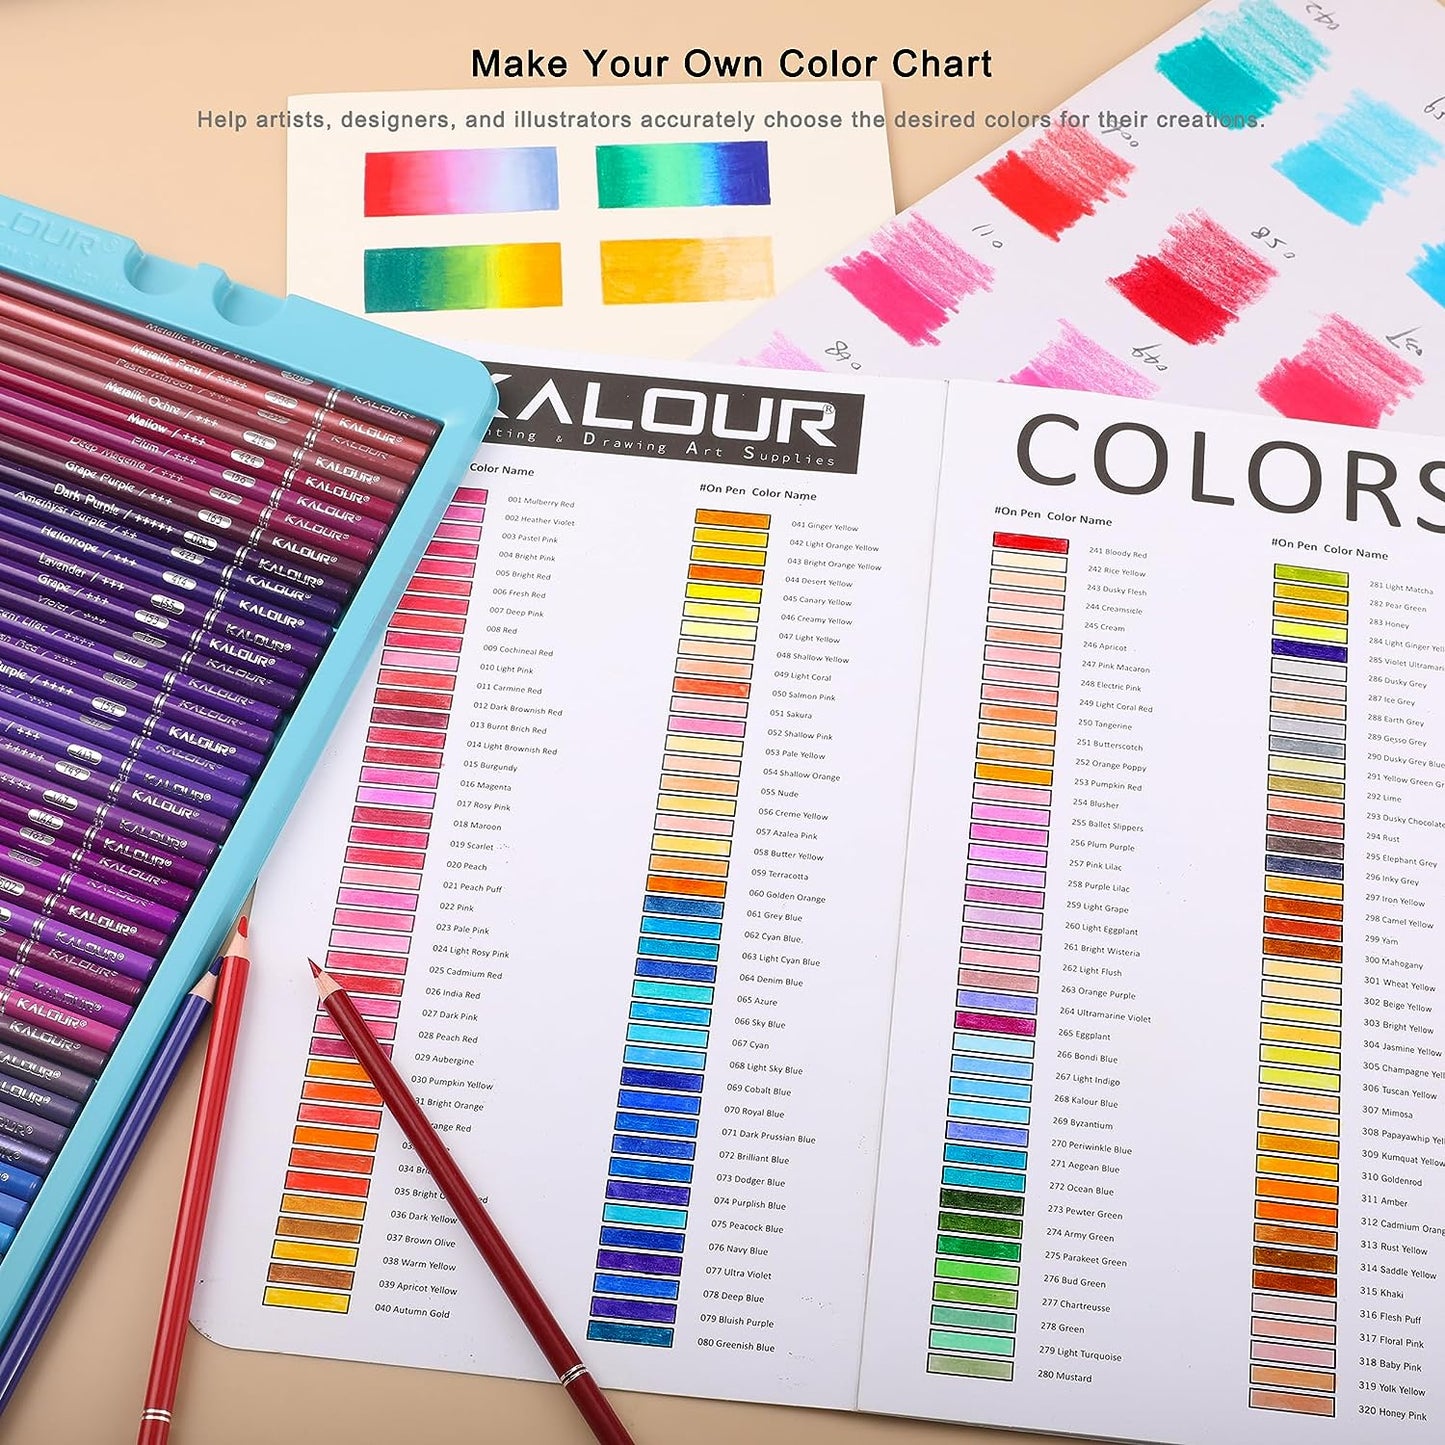 KALOUR Colored Pencils,Set of 520 Colors,Artists Soft Core with Vibrant Color